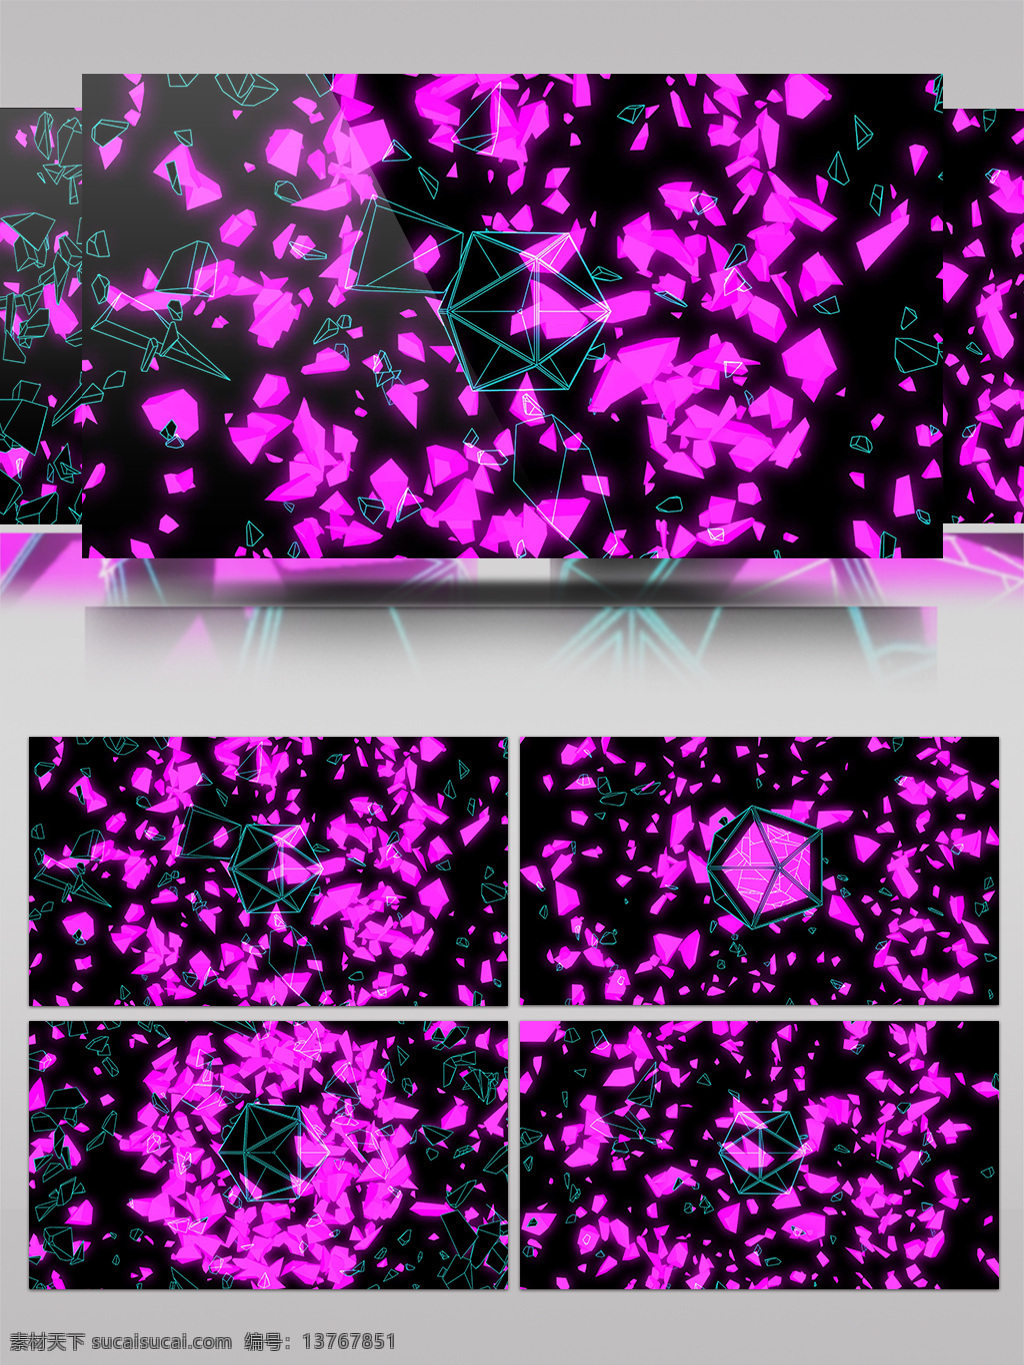 紫色 花瓣 视频 漫天飞舞 六边形 视频素材 动态视频素材